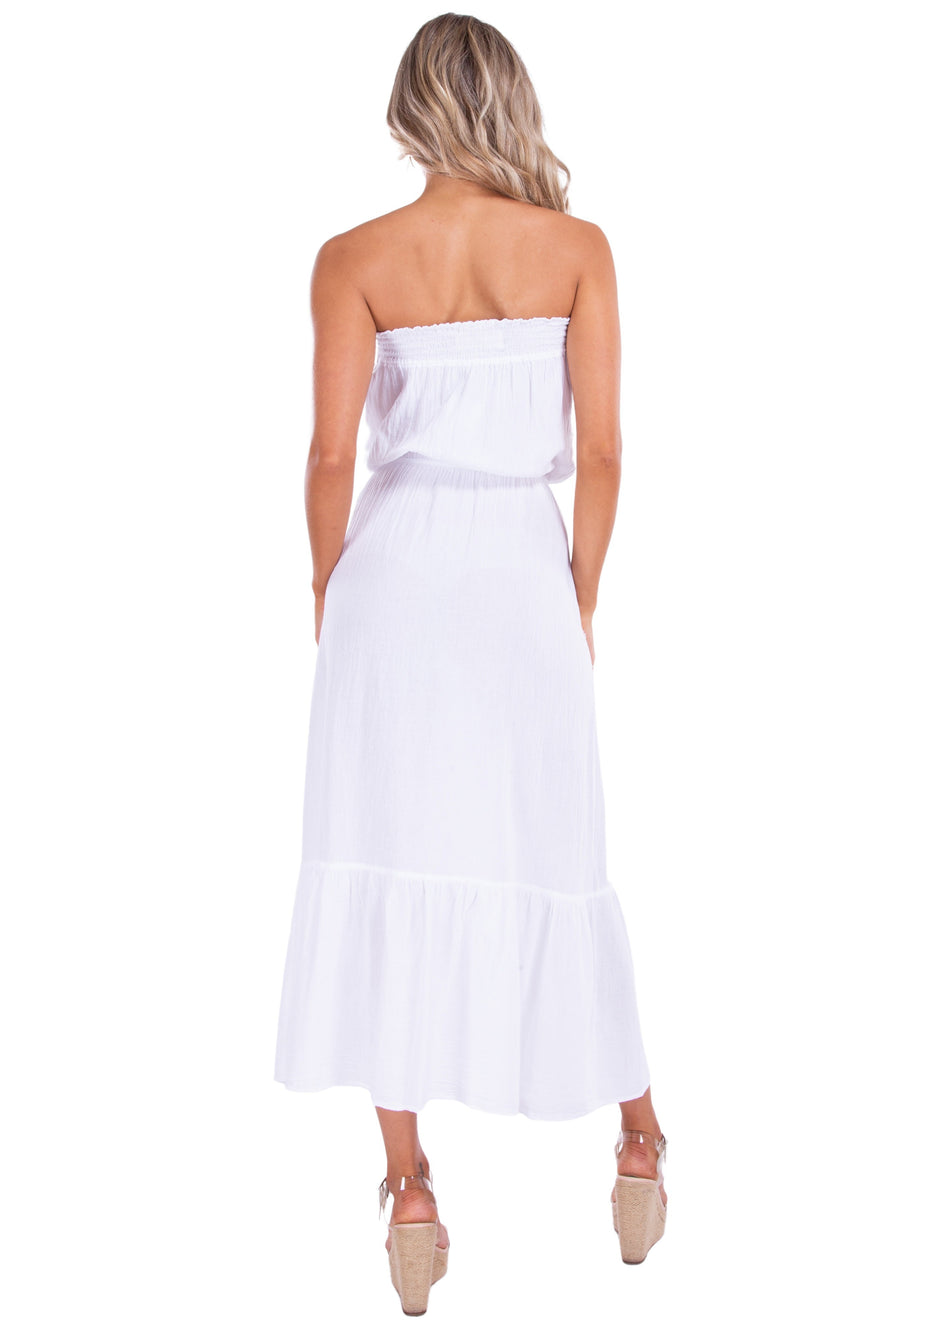 NW1440 - White Cotton Dress